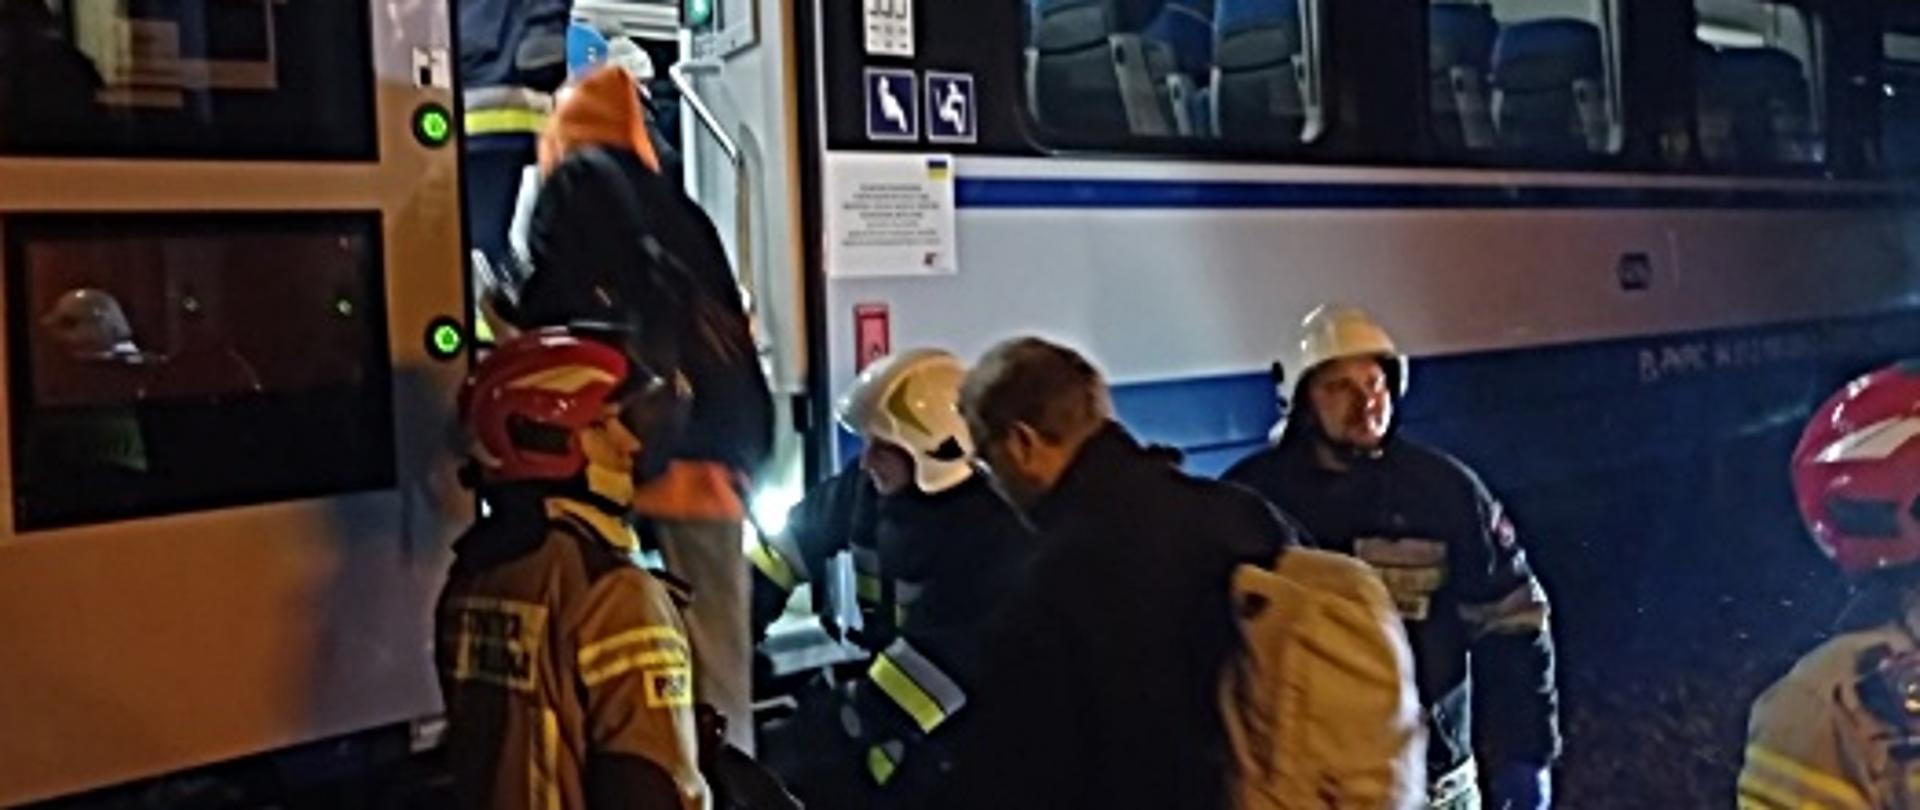 podejrzenie umieszczenia ładunku wybuchowego w pociągu, na zdjęciu trwa ewakuacja osób 